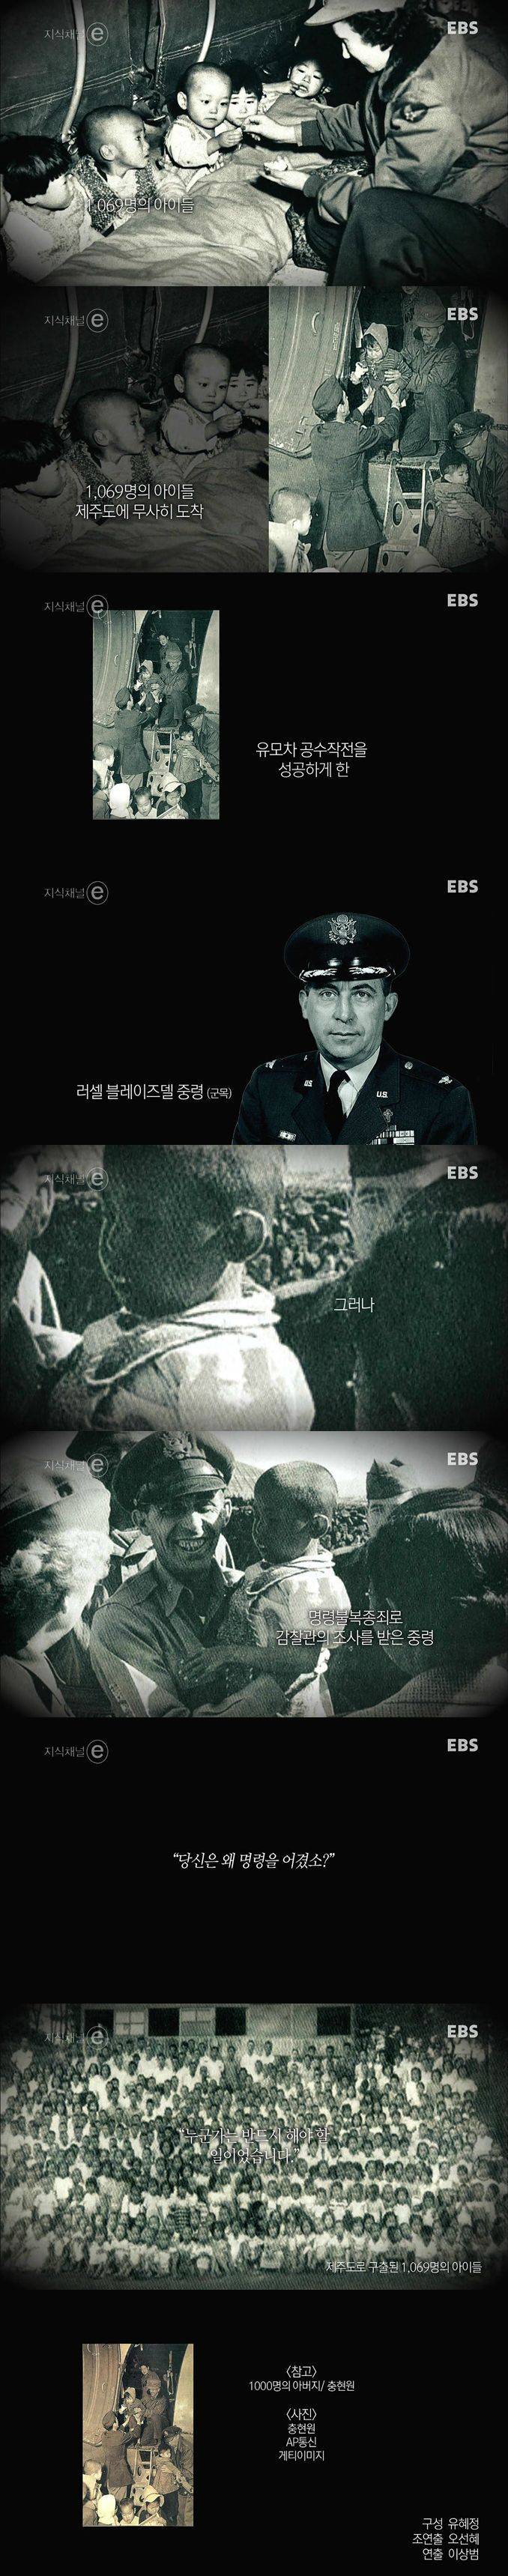 1059명의 아이들을 구해낸 한국전쟁 유모차 공수작전 | 인스티즈